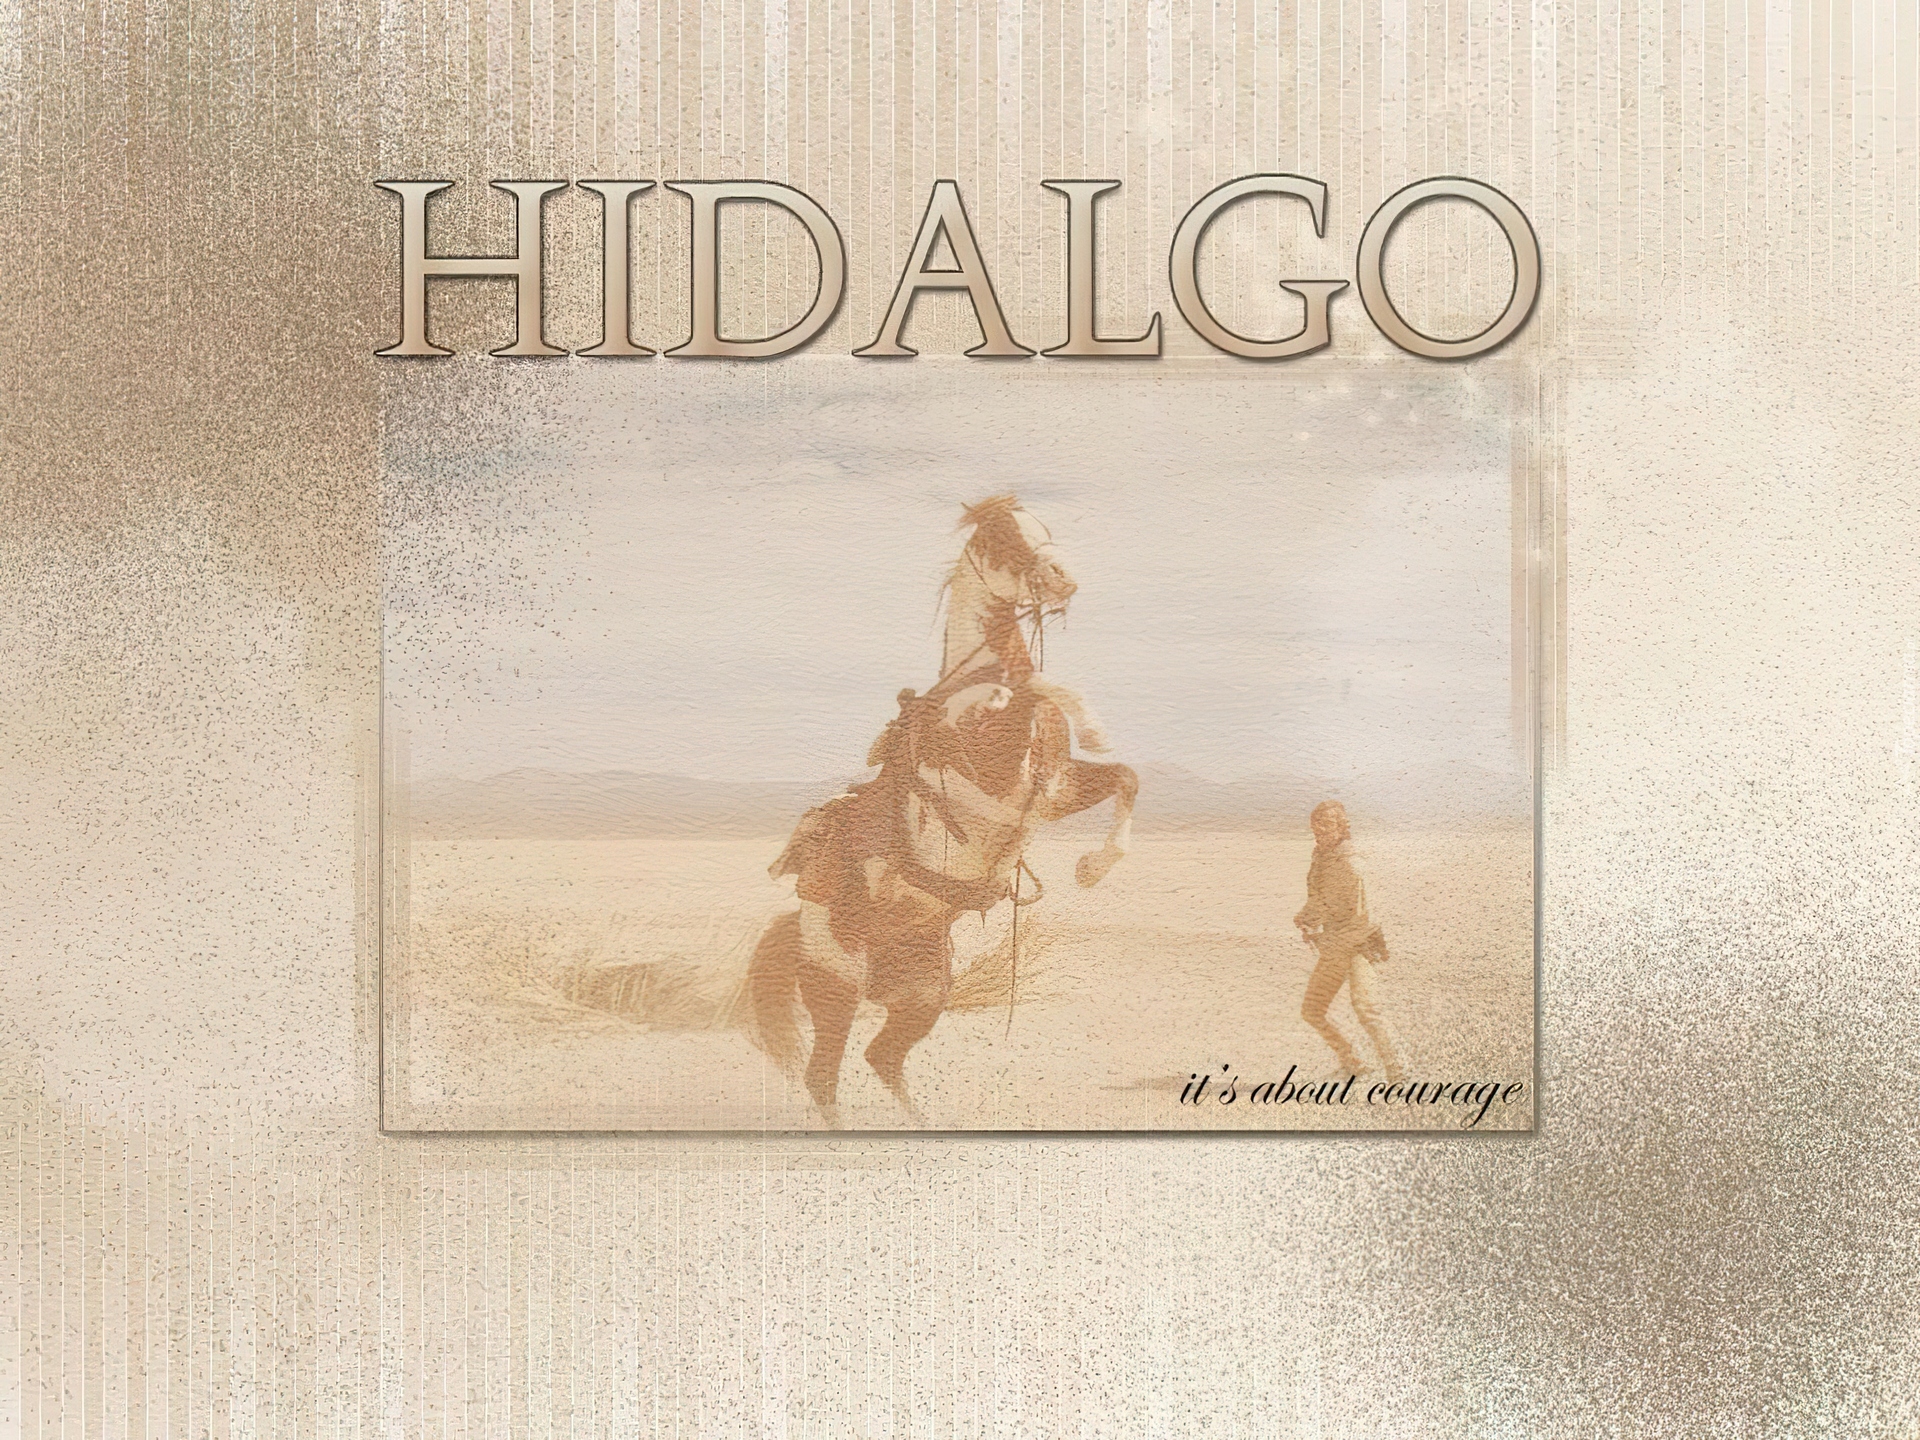 Hidalgo, obrazek, koń